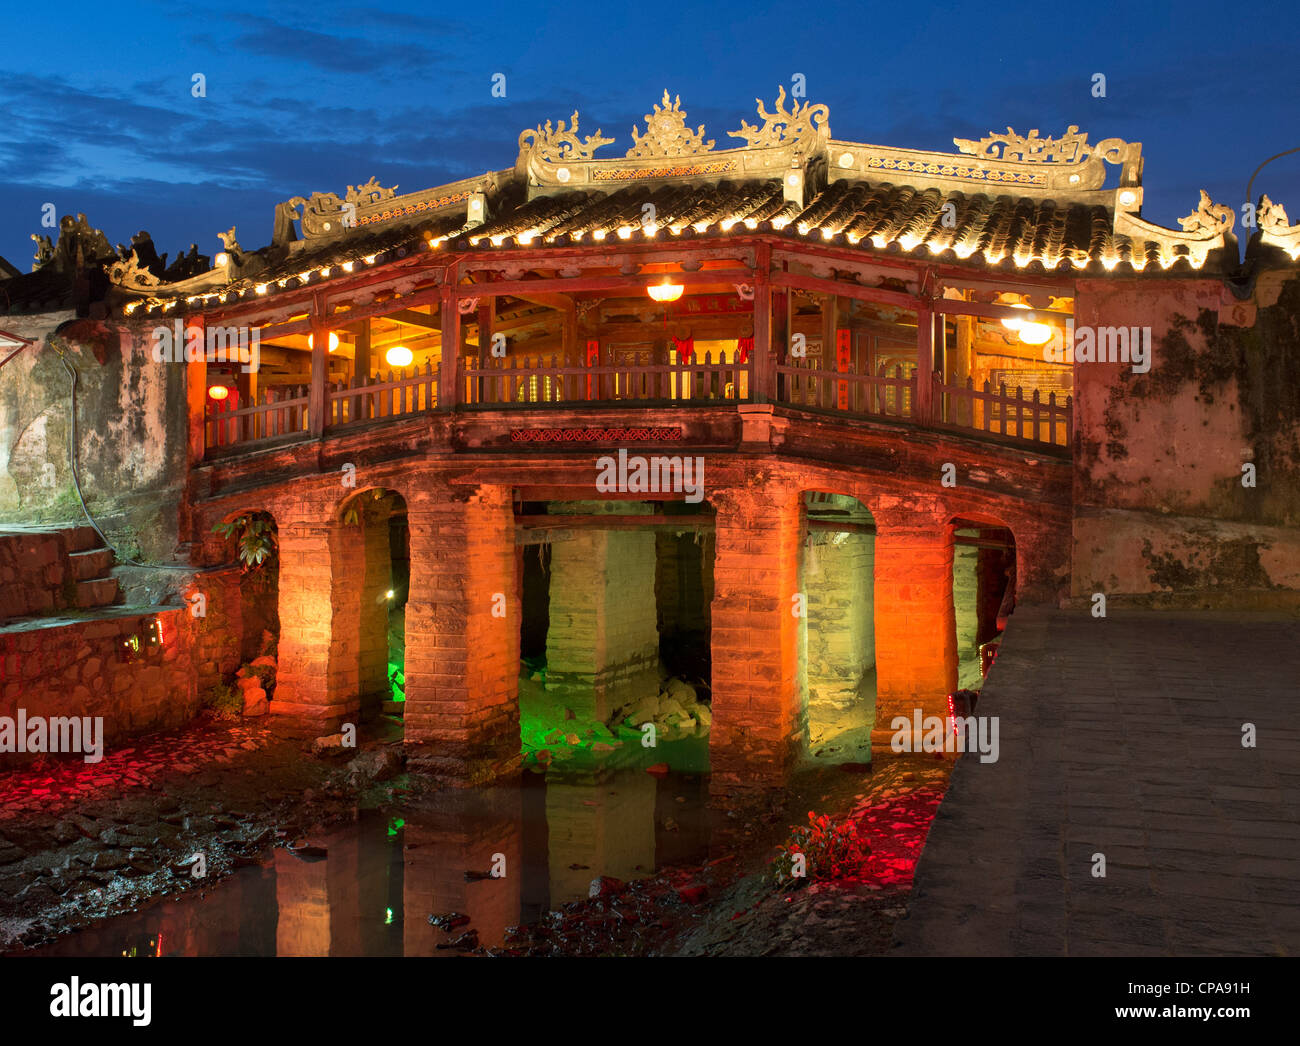 Allumé en vue de nuit le pont couvert japonais historique patrimoine de l'UNESCO dans la ville de Hoi An au Vietnam Banque D'Images